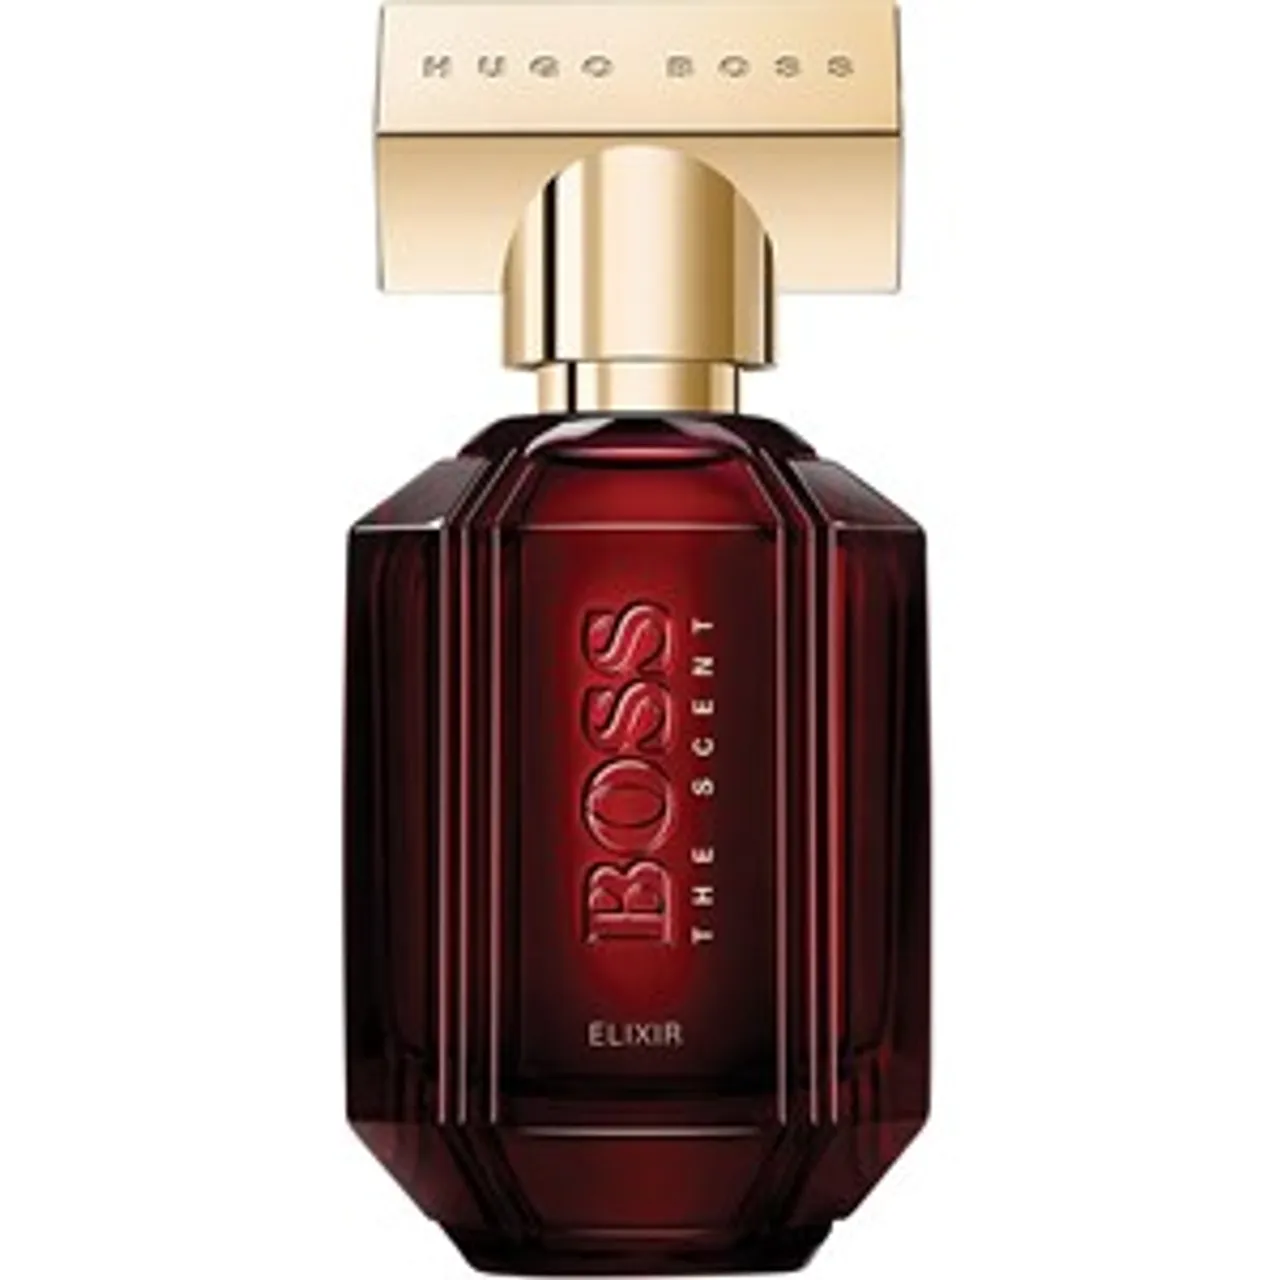 Hugo Boss Eau de Parfum Spray Female 50 ml